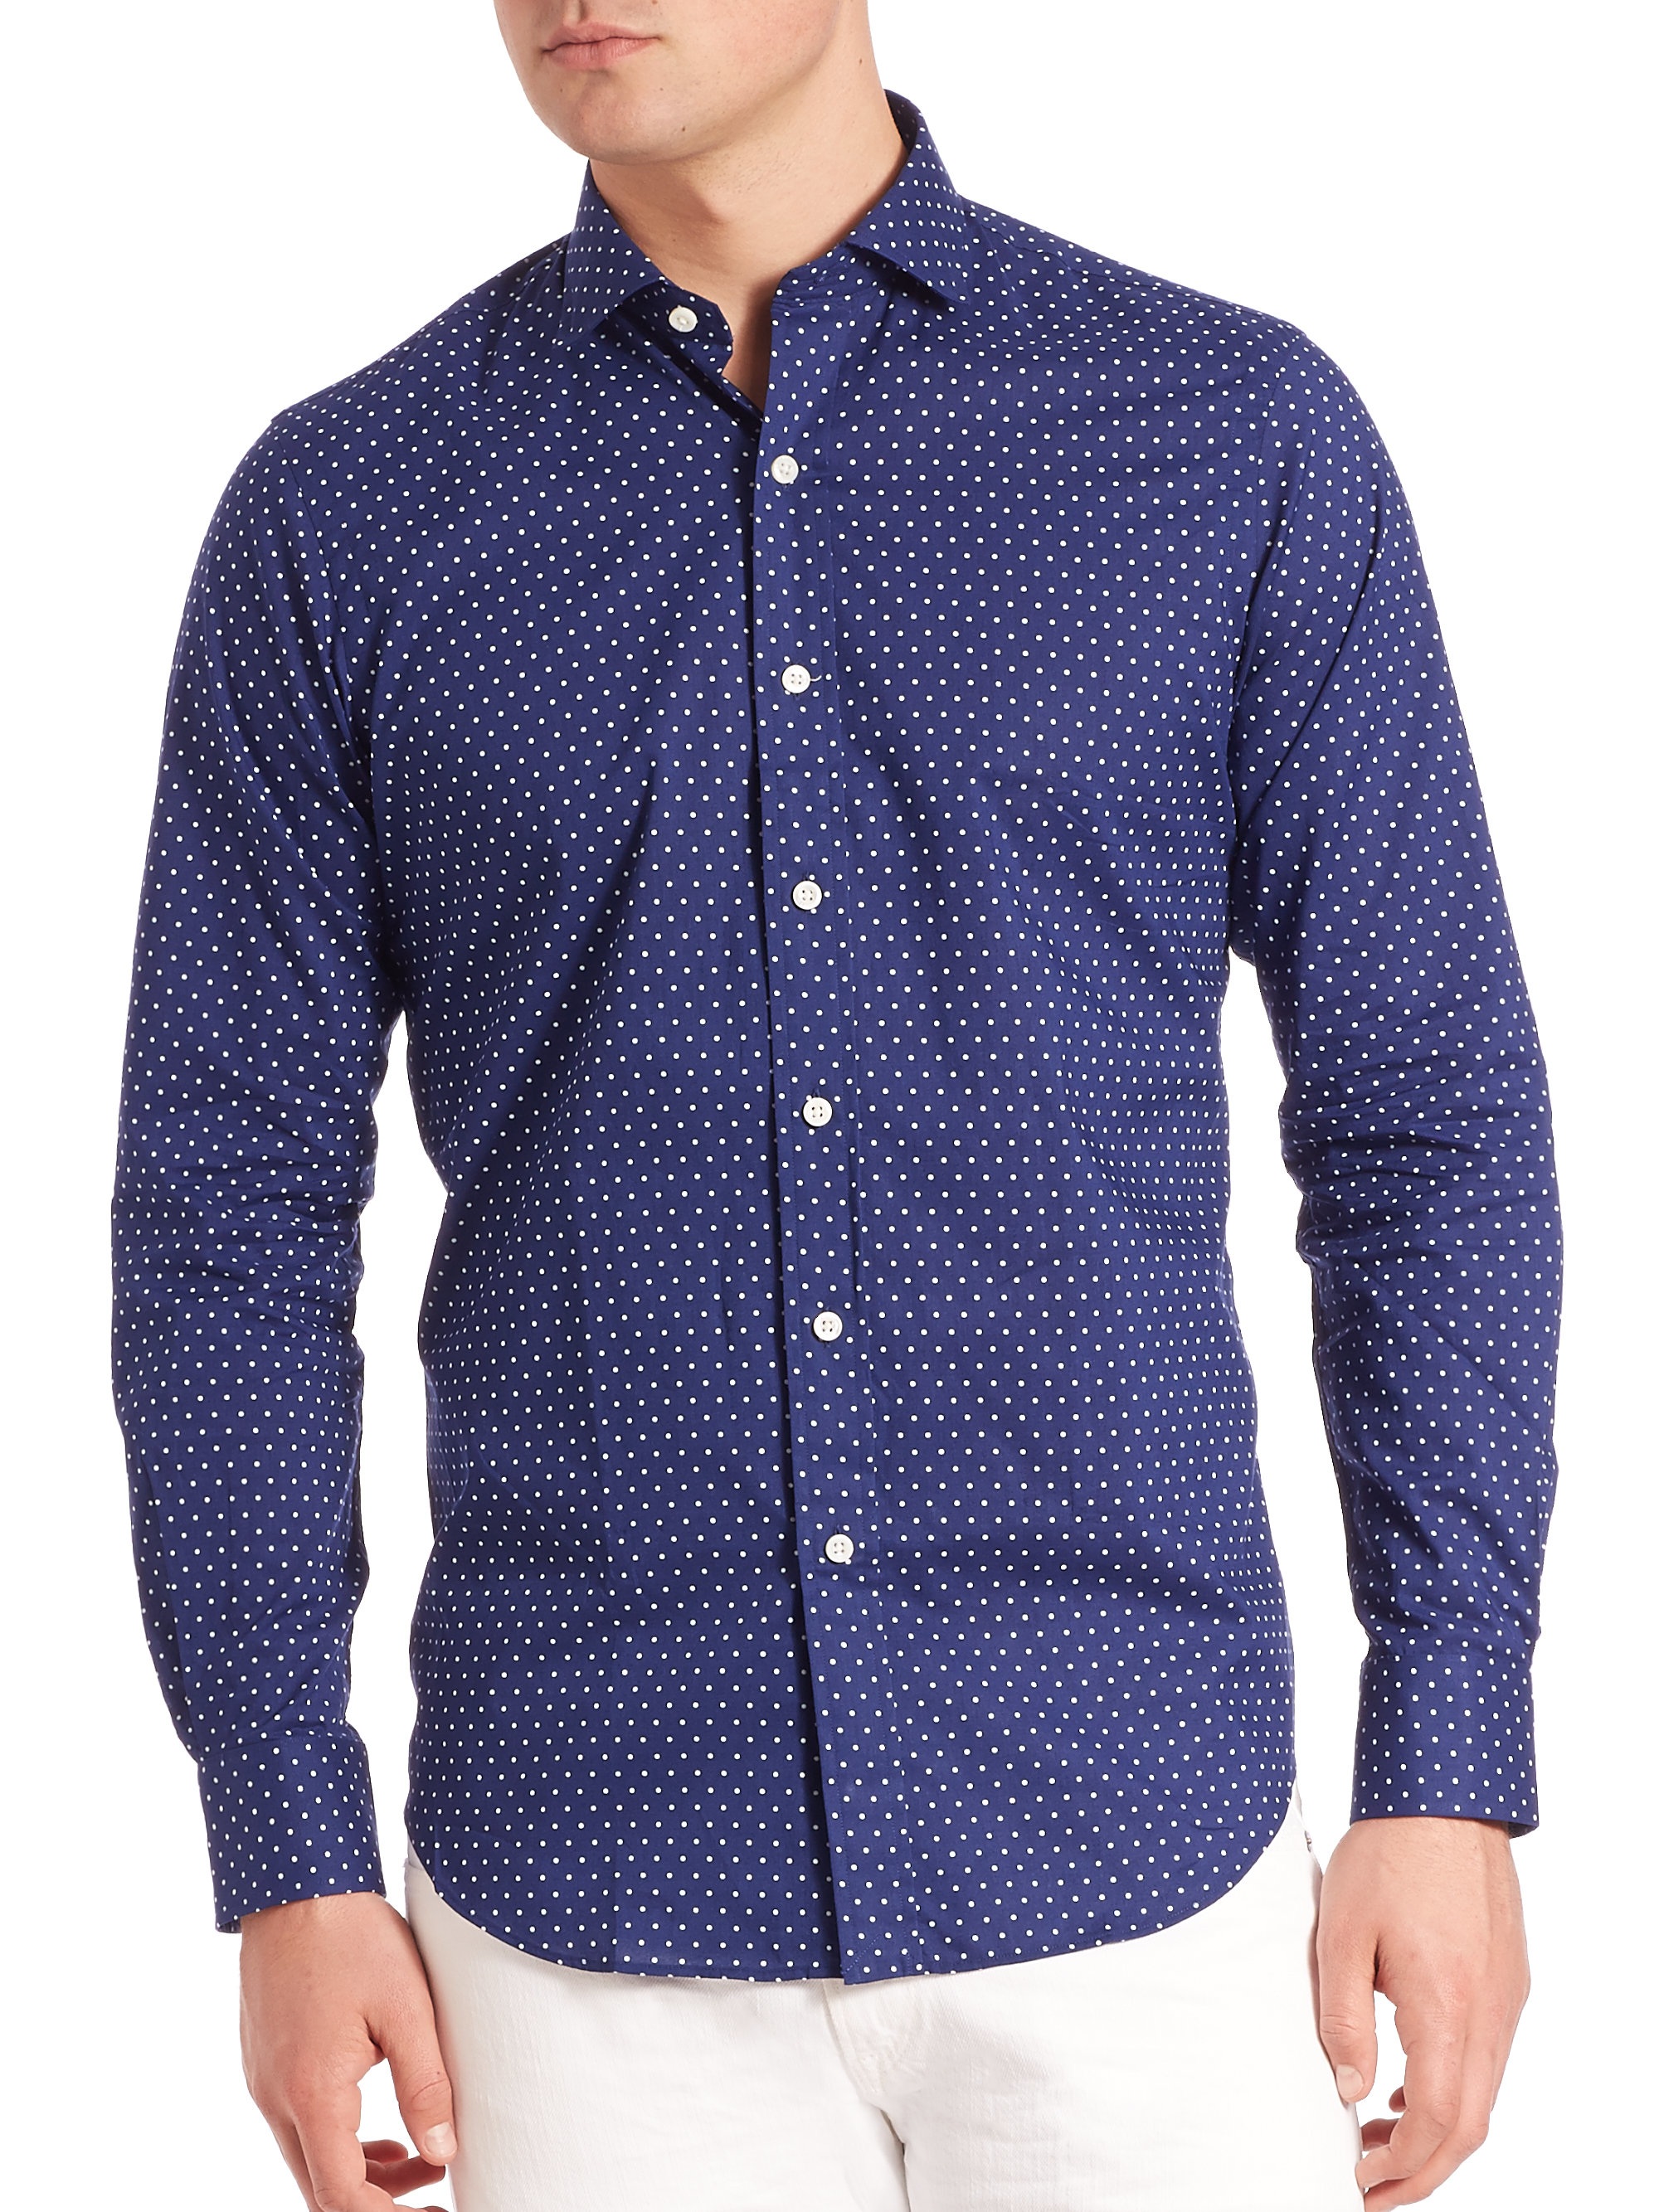 Lyst - Polo Ralph Lauren Polka-dot Estate Shirt in Blue for Men